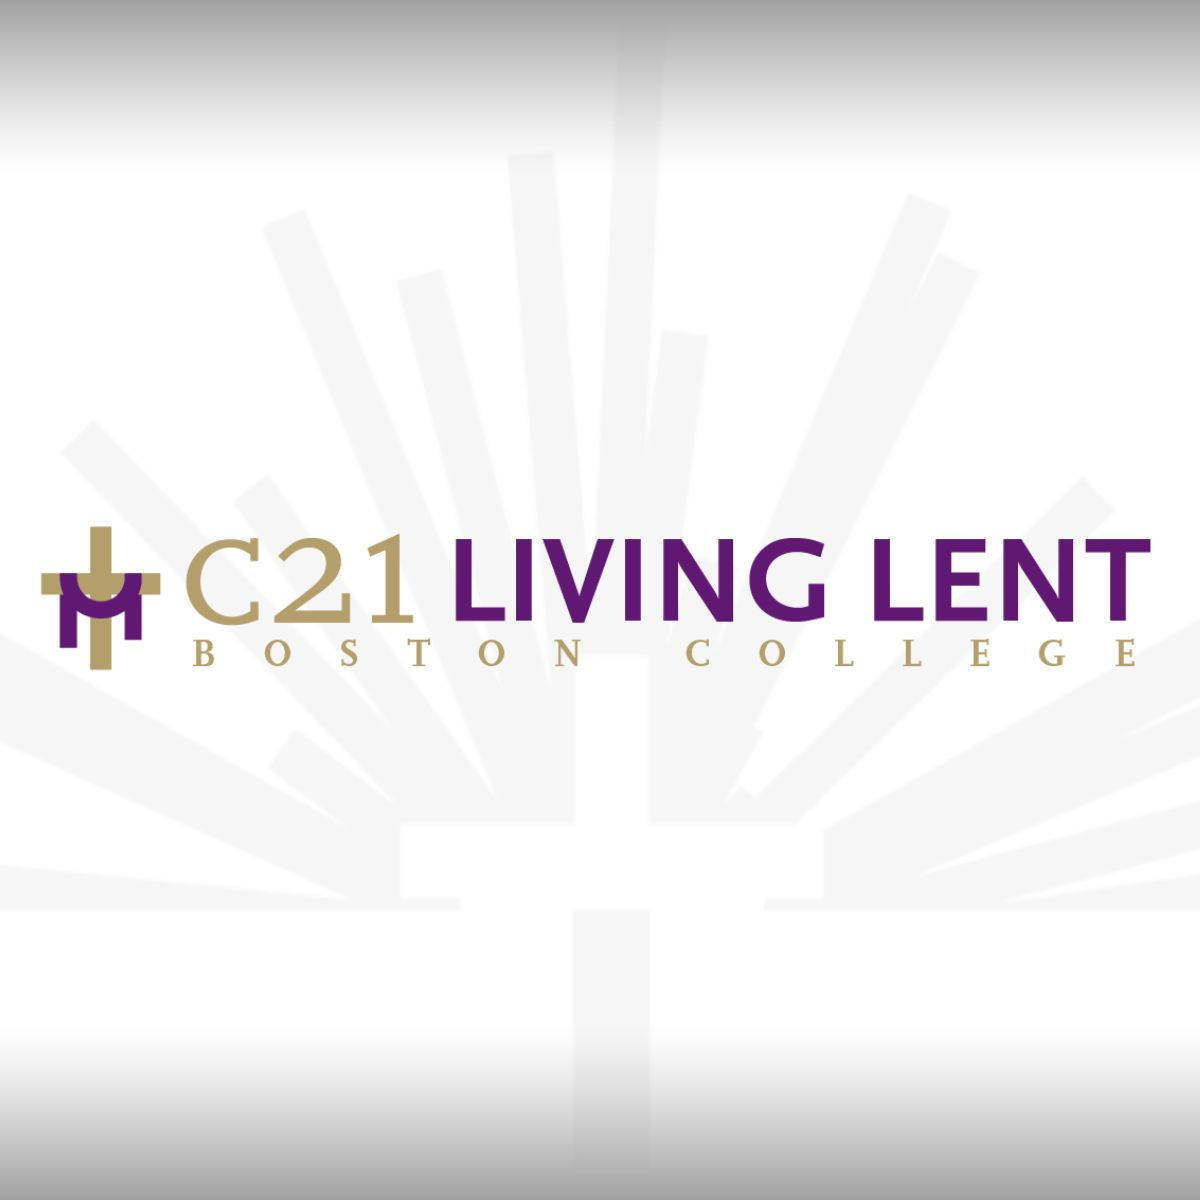  C21 Lenten Calendar